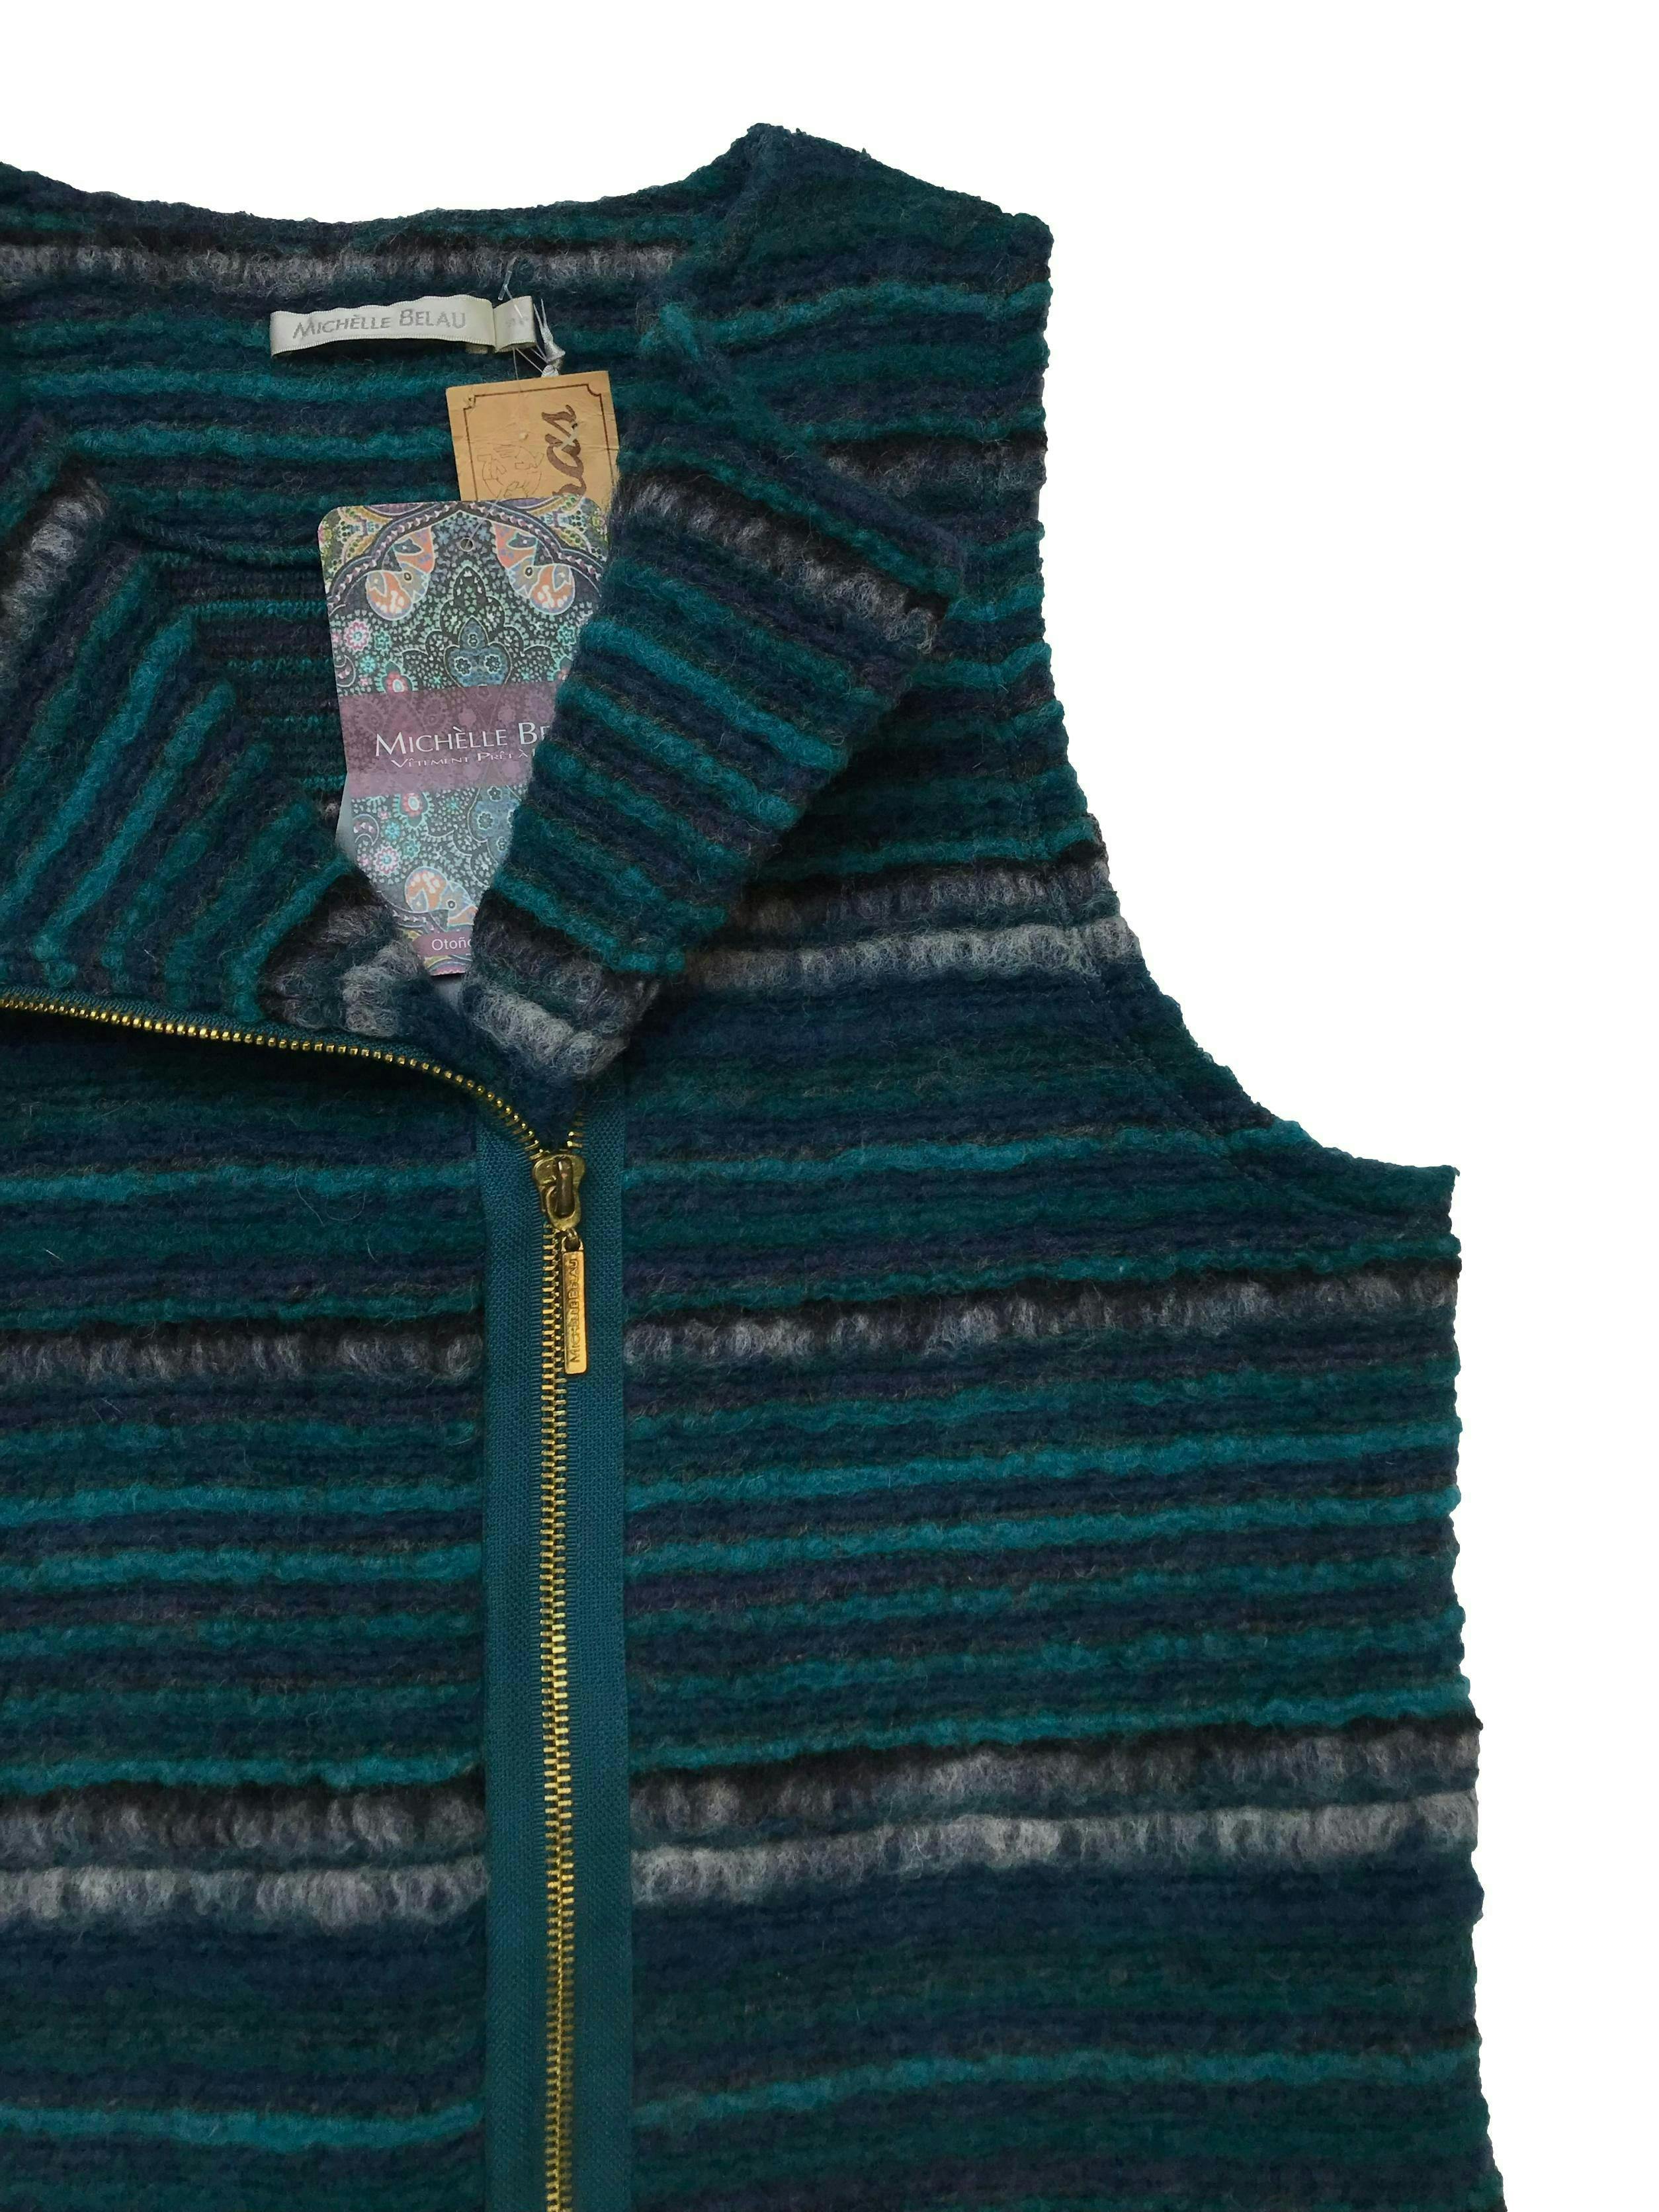 Chaleco tejido Michelle Belau 60% lana, lleva cierre delantero. Busto 100cm Largo 56cm. Nuevo con etiqueta. Precio original S/ 189